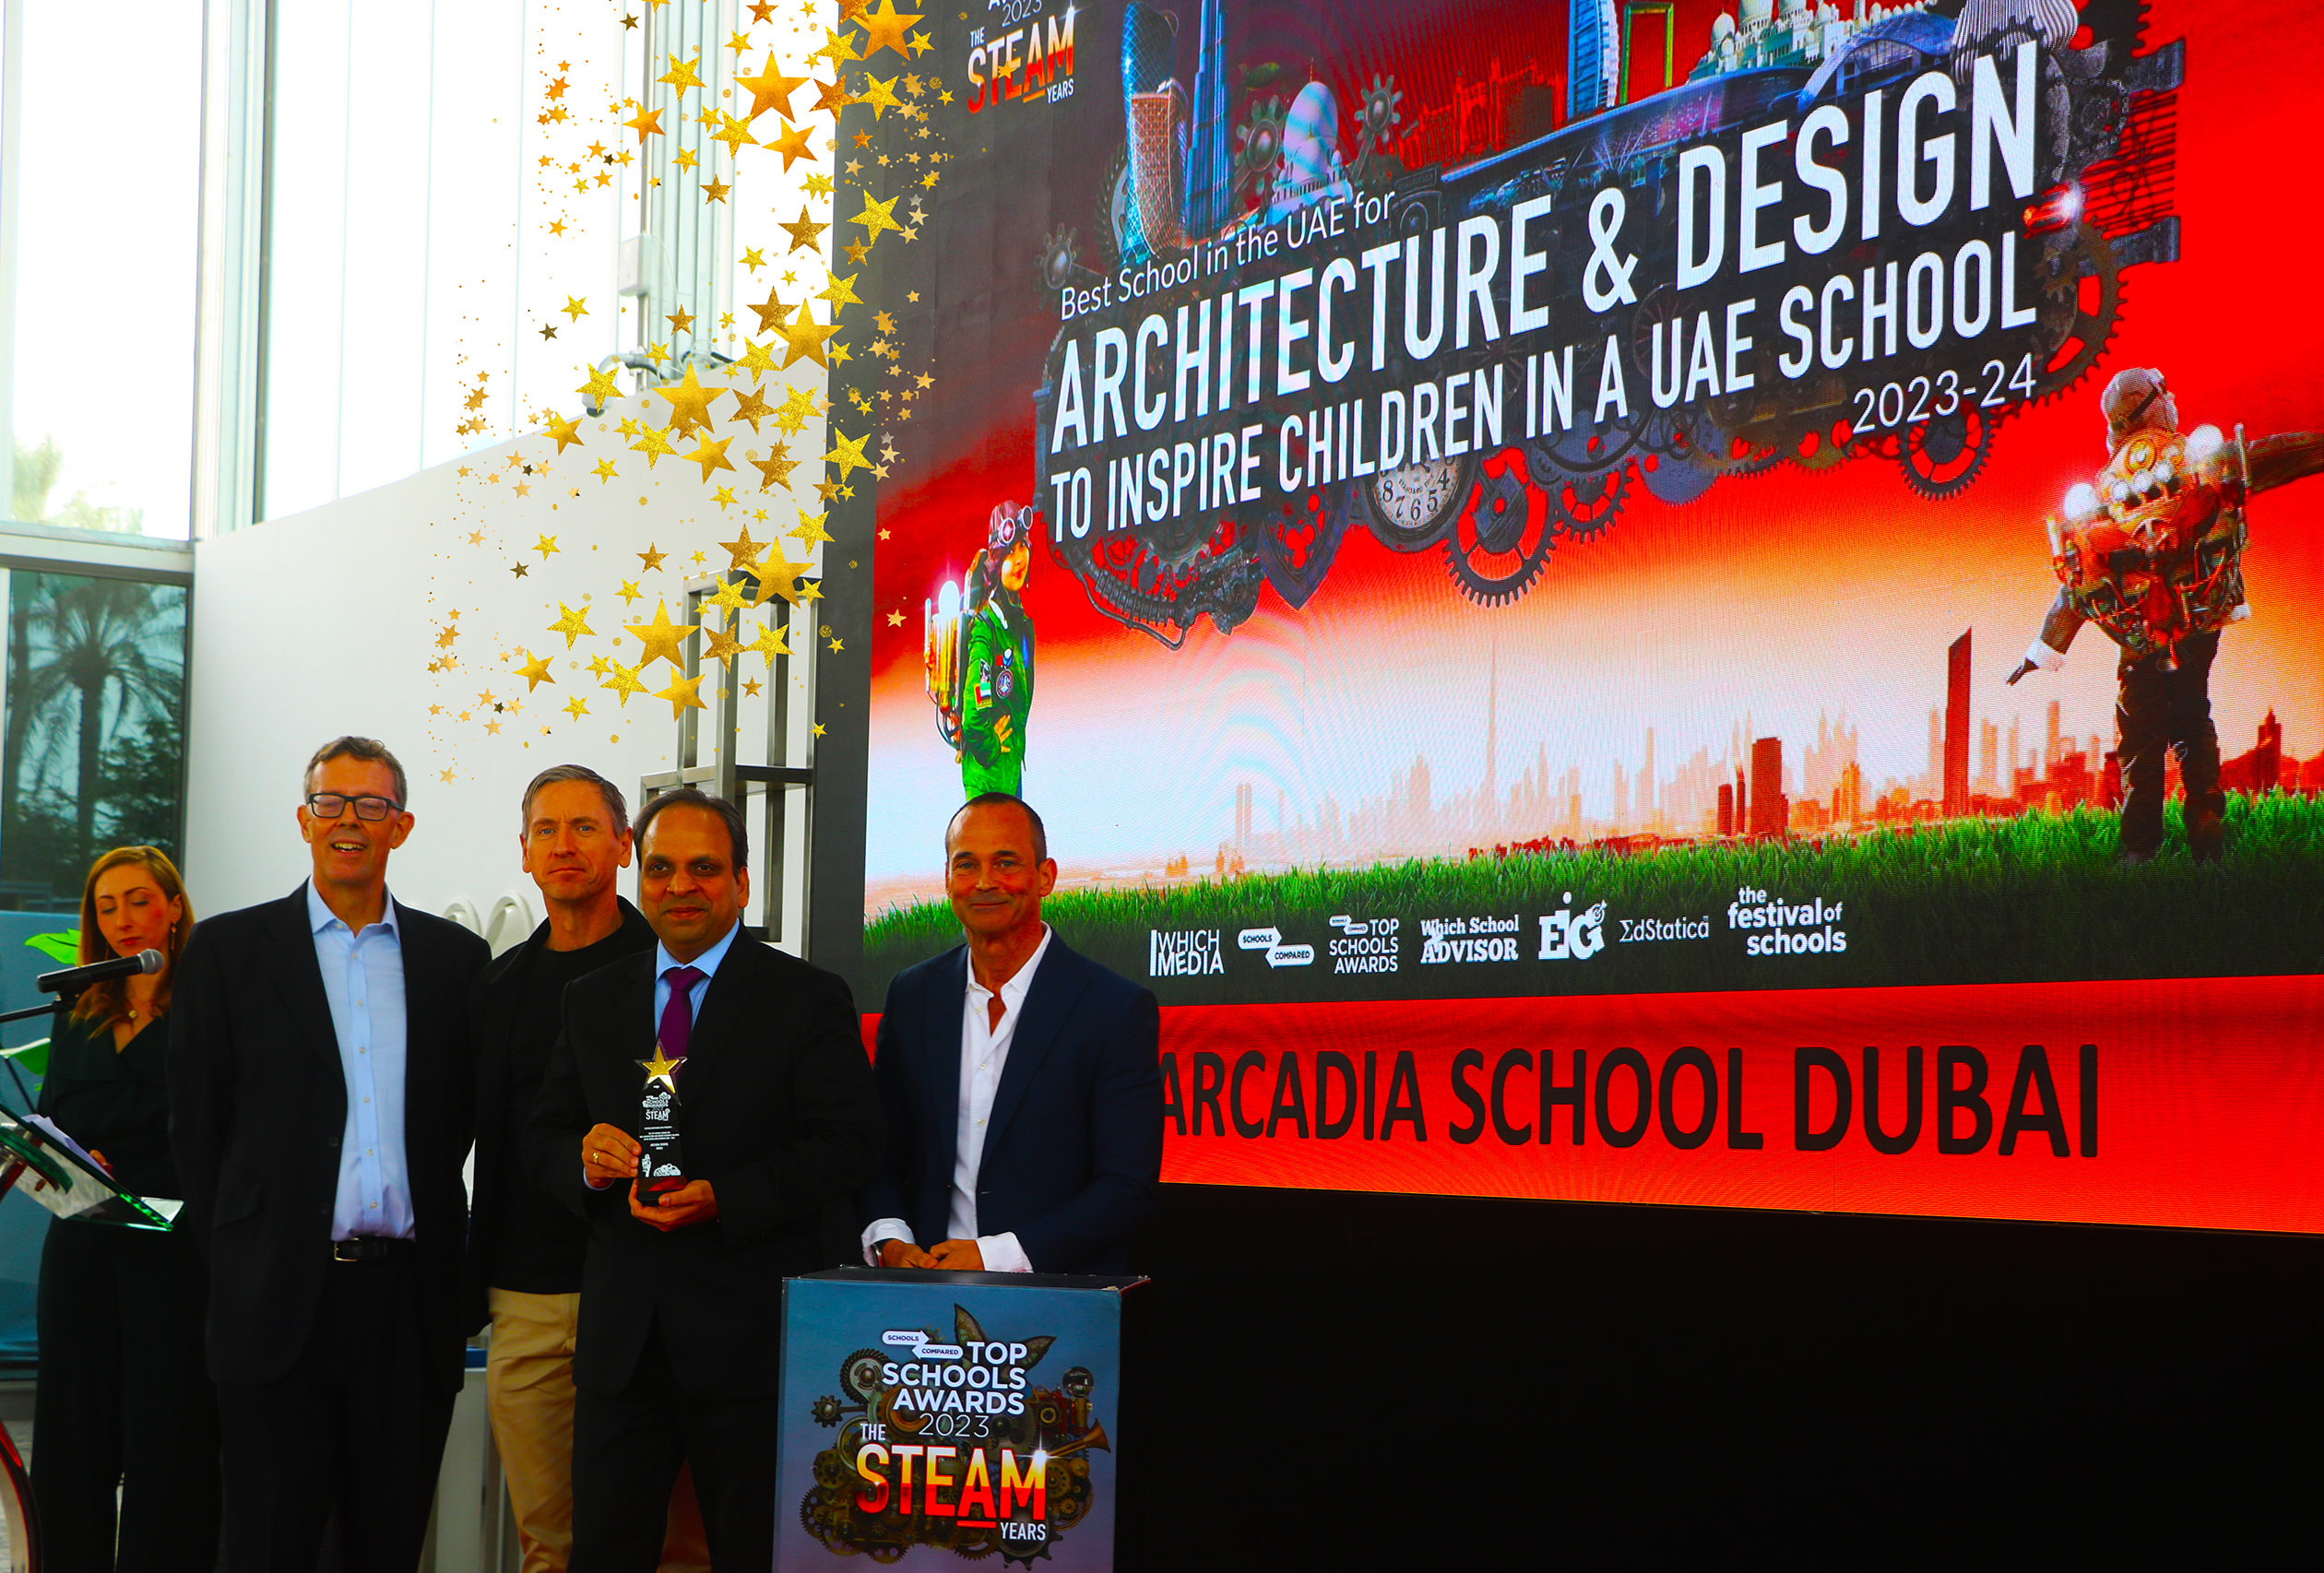 Die Arcadia School Dubai wurde bei den Top Schools Awards 2024 mit dem Preis für die beste Schule für Architektur zur Inspiration von Kindern ausgezeichnet